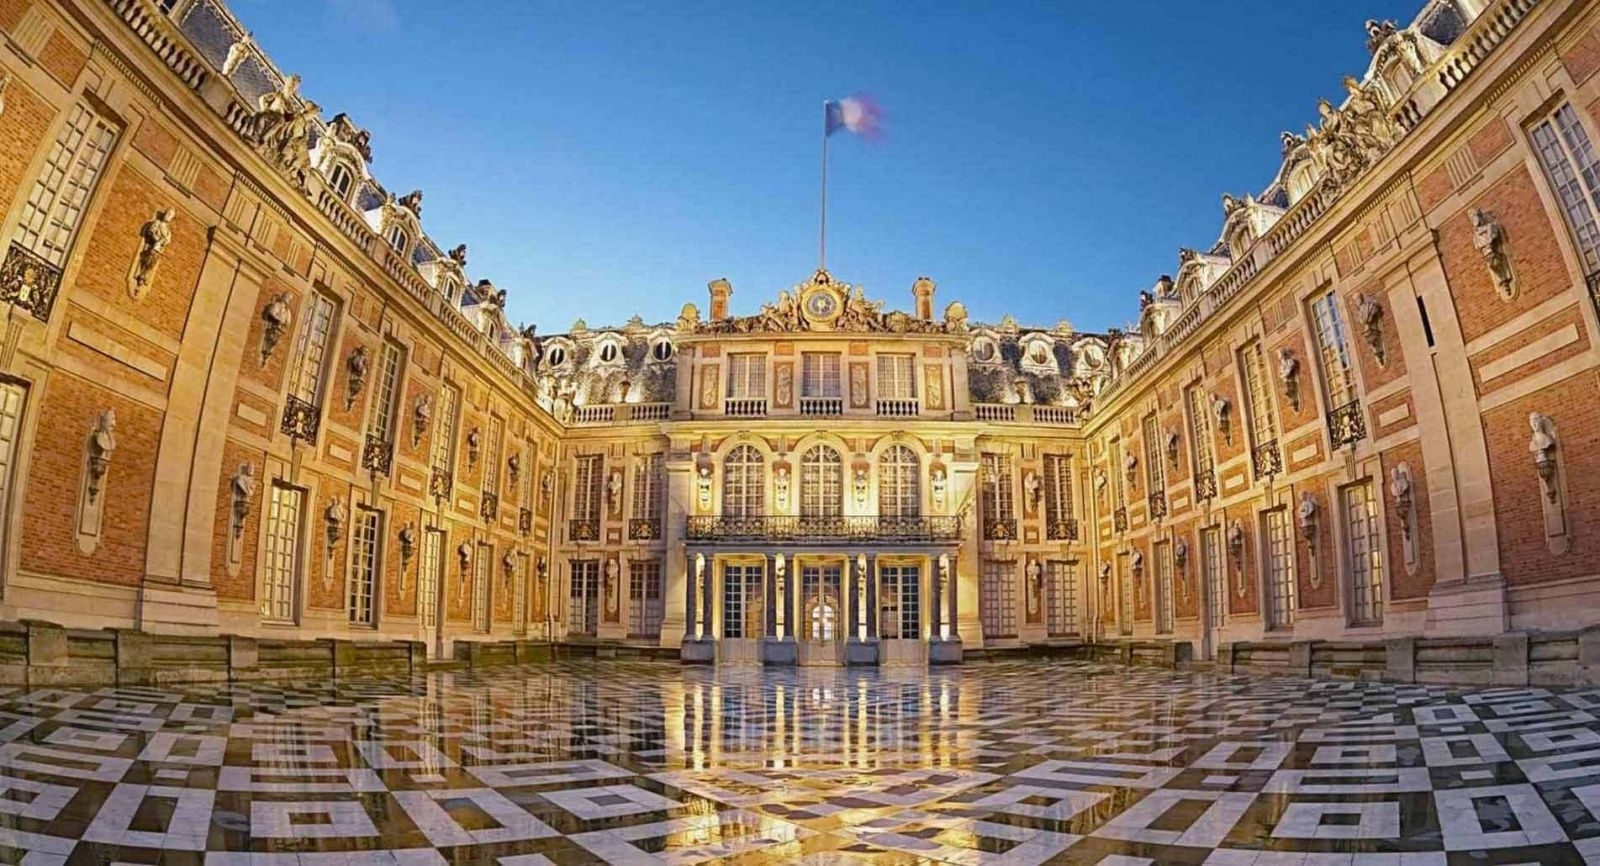 Hoàng cung lớn (Cung điện Versailles) - Hoàng cung nhỏ (Cung điện Fontainebleau), tại Pháp